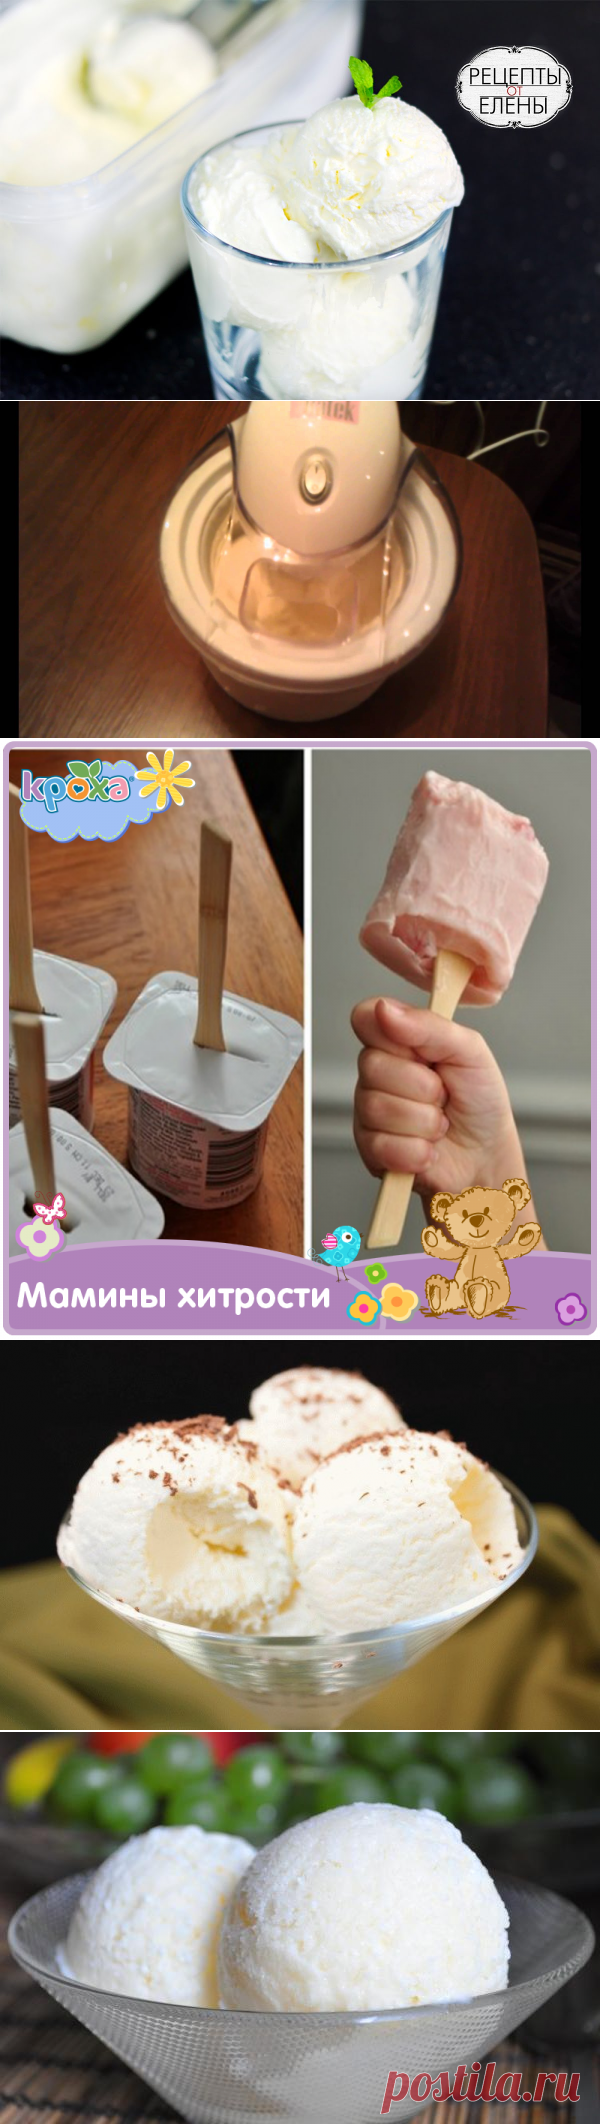 Как сделать мороженое в домашних условиях, простые рецепты своими руками – Женский сайт Femme Today